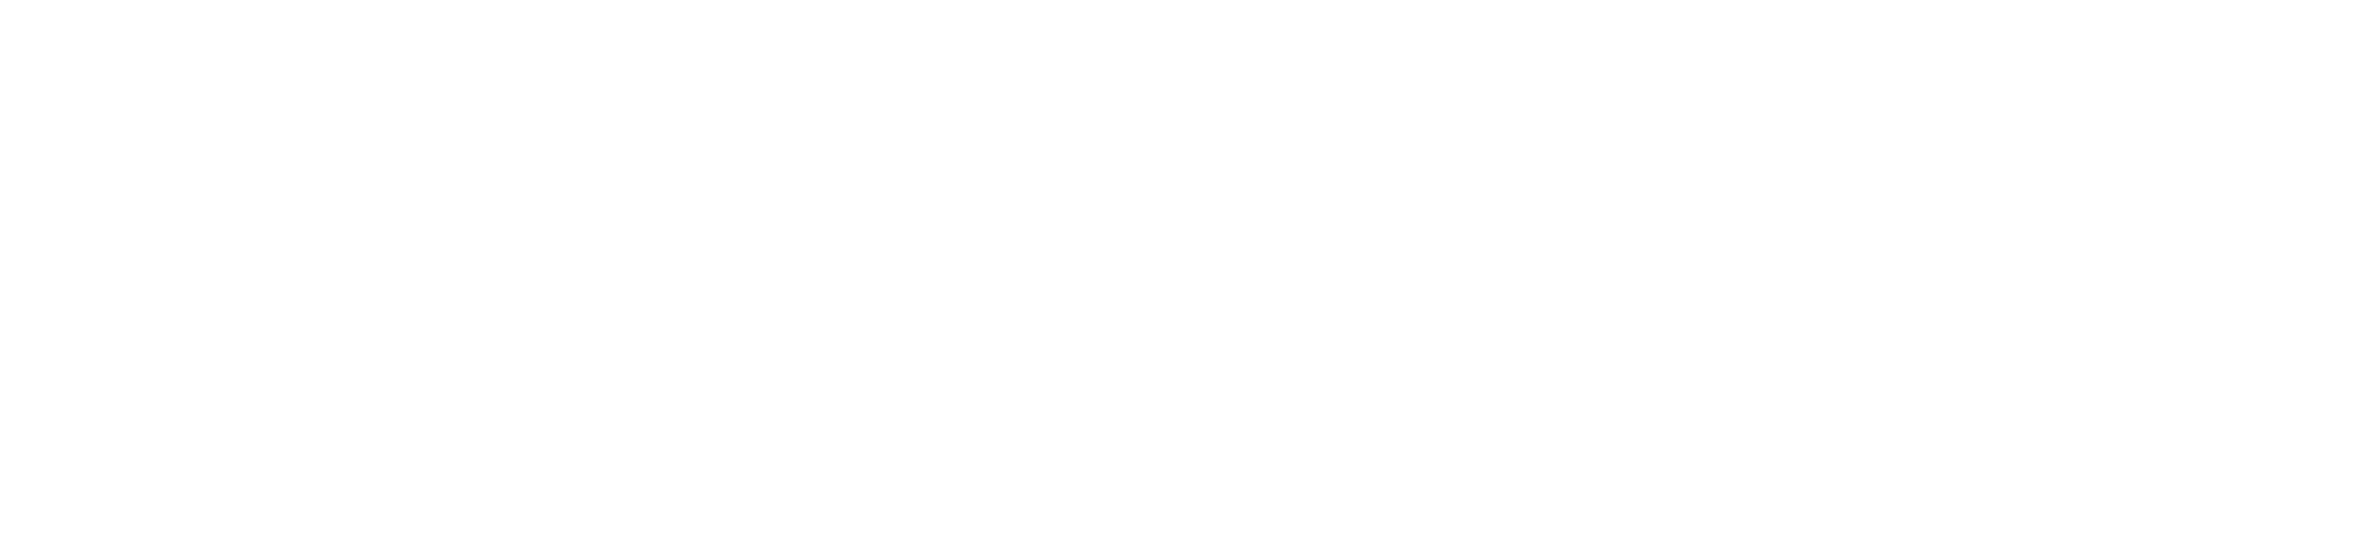  Max-Planck-Institut für Bildungsforschung